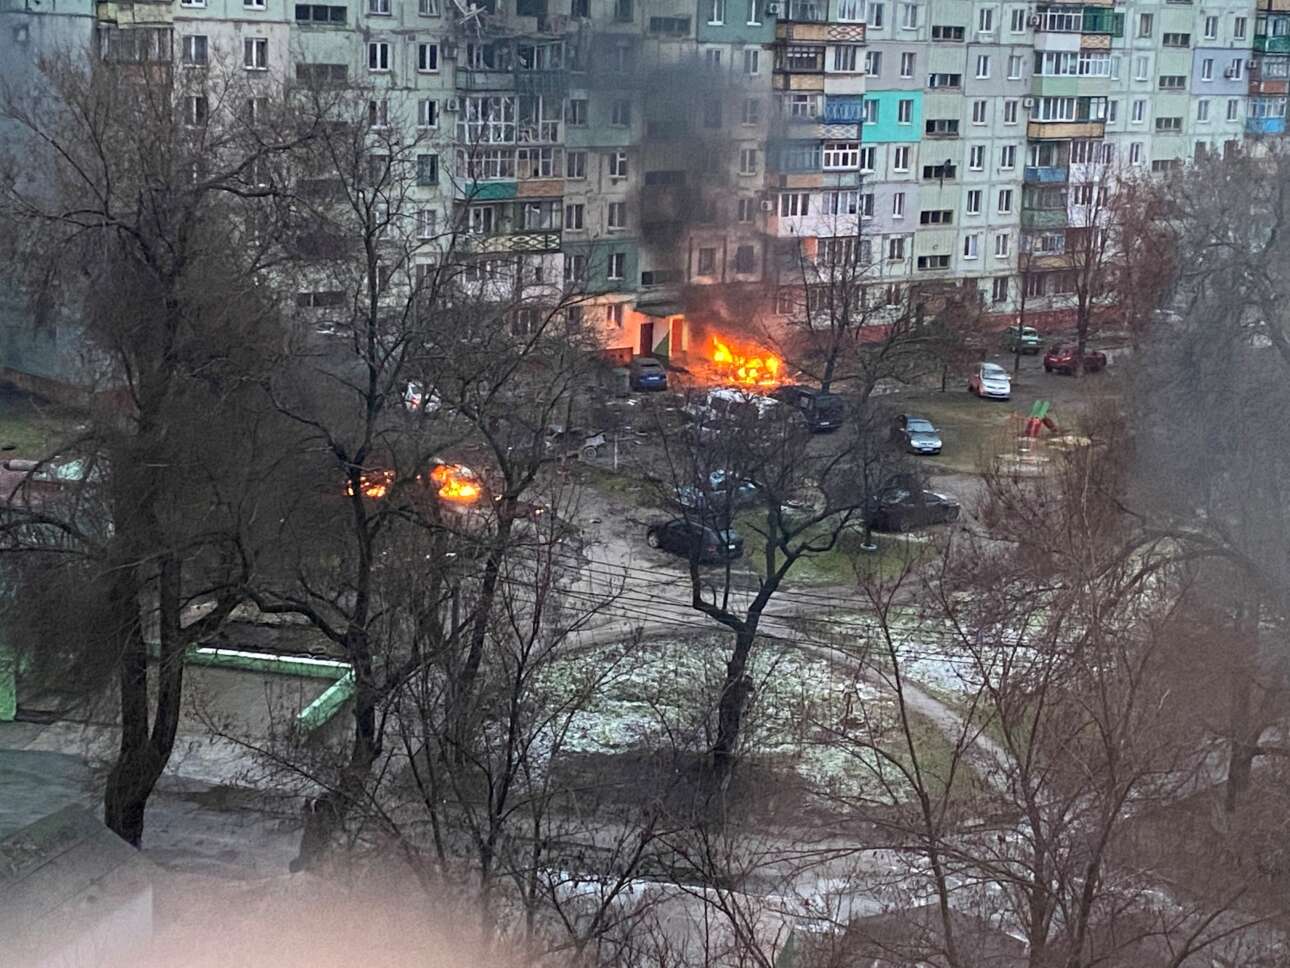 Πυρκαγιά ξέσπασε σε κατοικημένη περιοχή της Μαριούπολης στις 3 Μαρτίου ύστερα από ρωσικούς βομβαρδισμού – πρόκειται για φωτογραφία που κυκλοφόρησε στα σόσιαλ μίντια